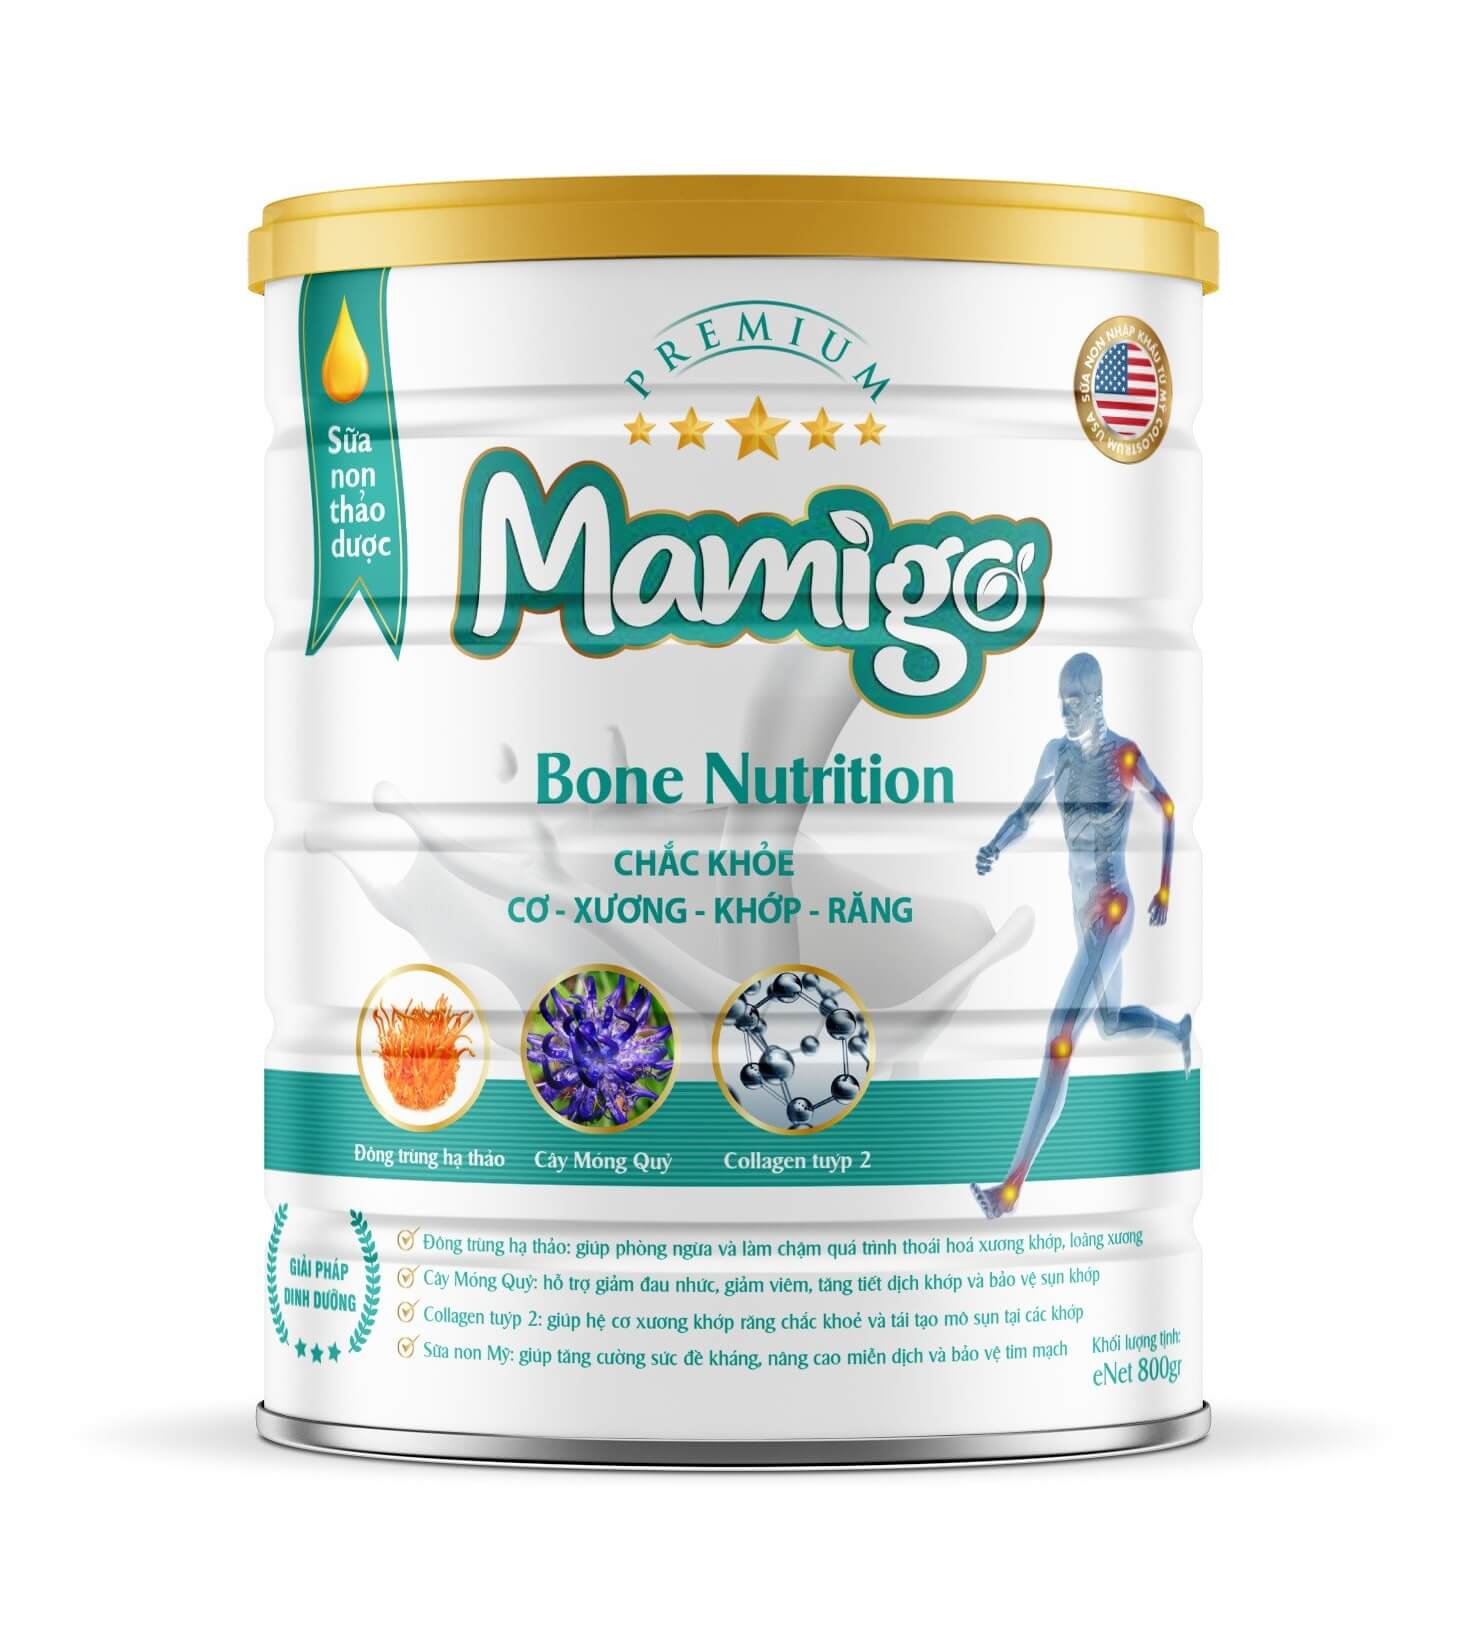 Sữa non thảo dược Mamigo Bone Nutrition